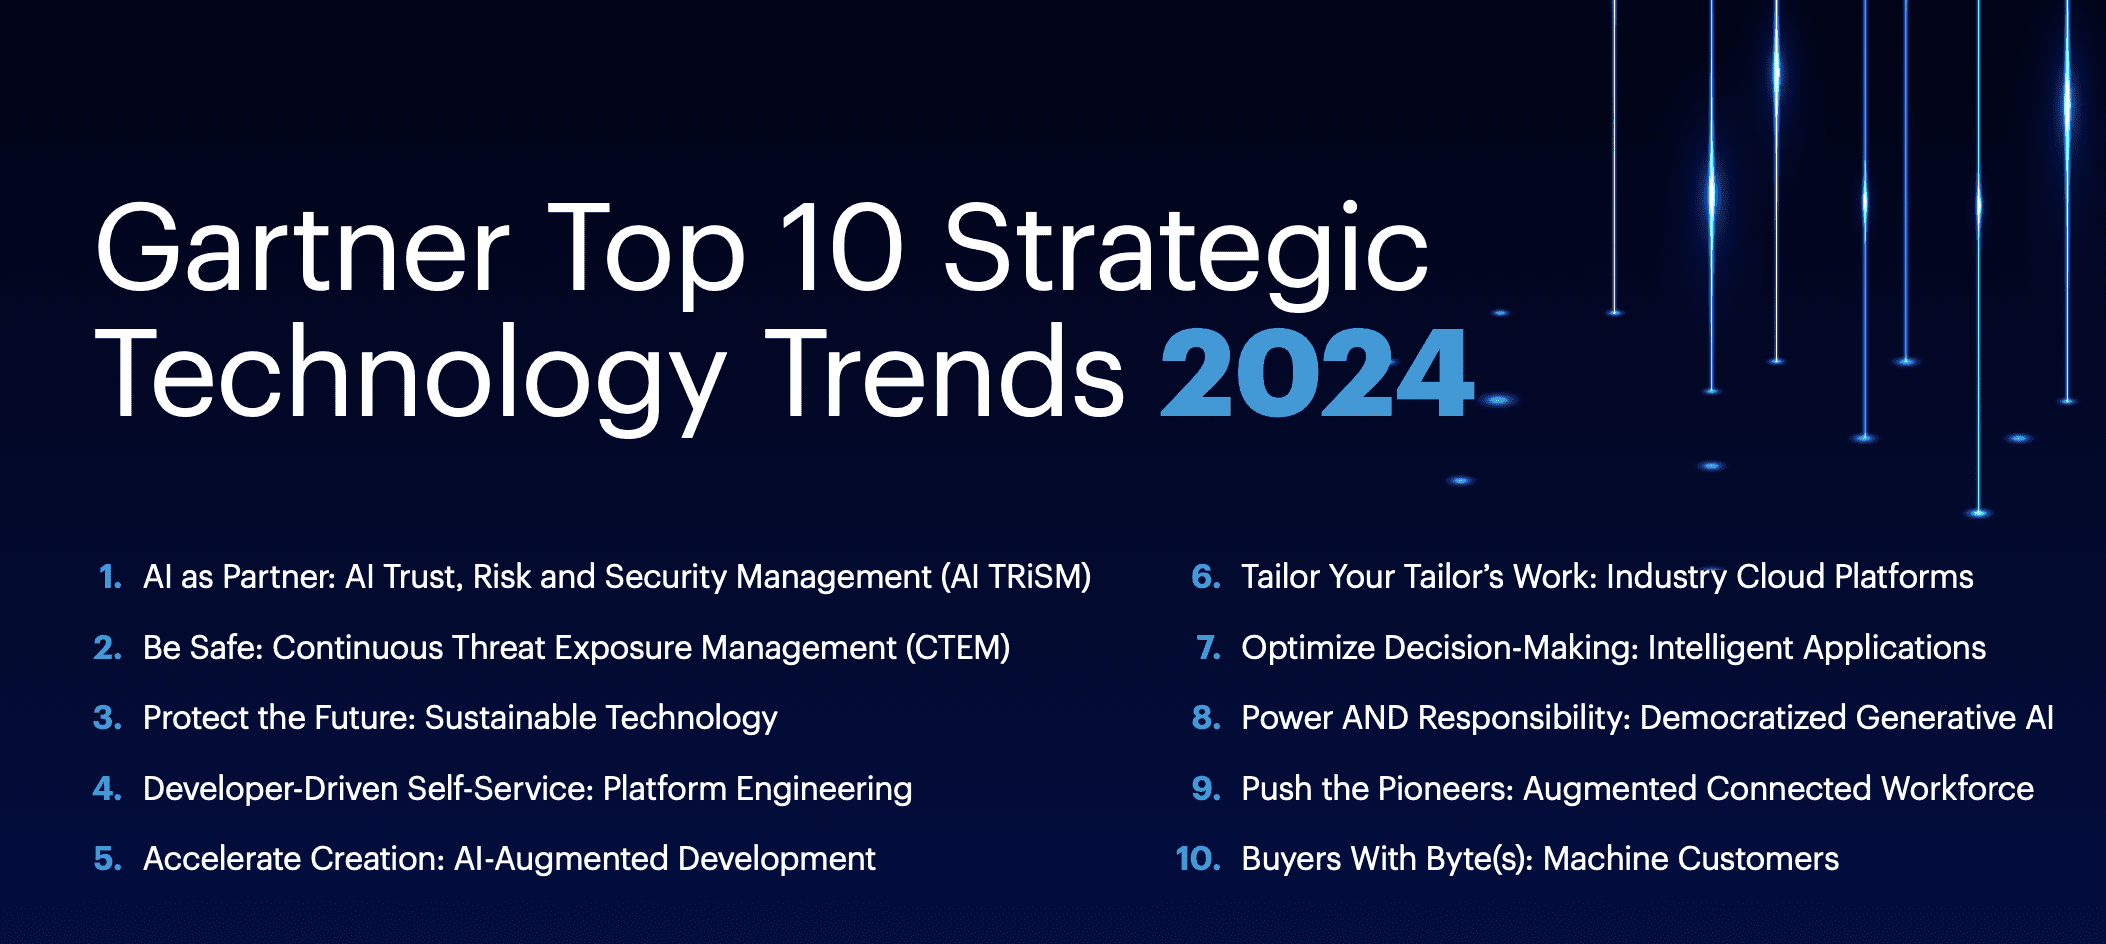 Image source: Gartner. Gartner Top 10 Strategic Technology Trends 2024